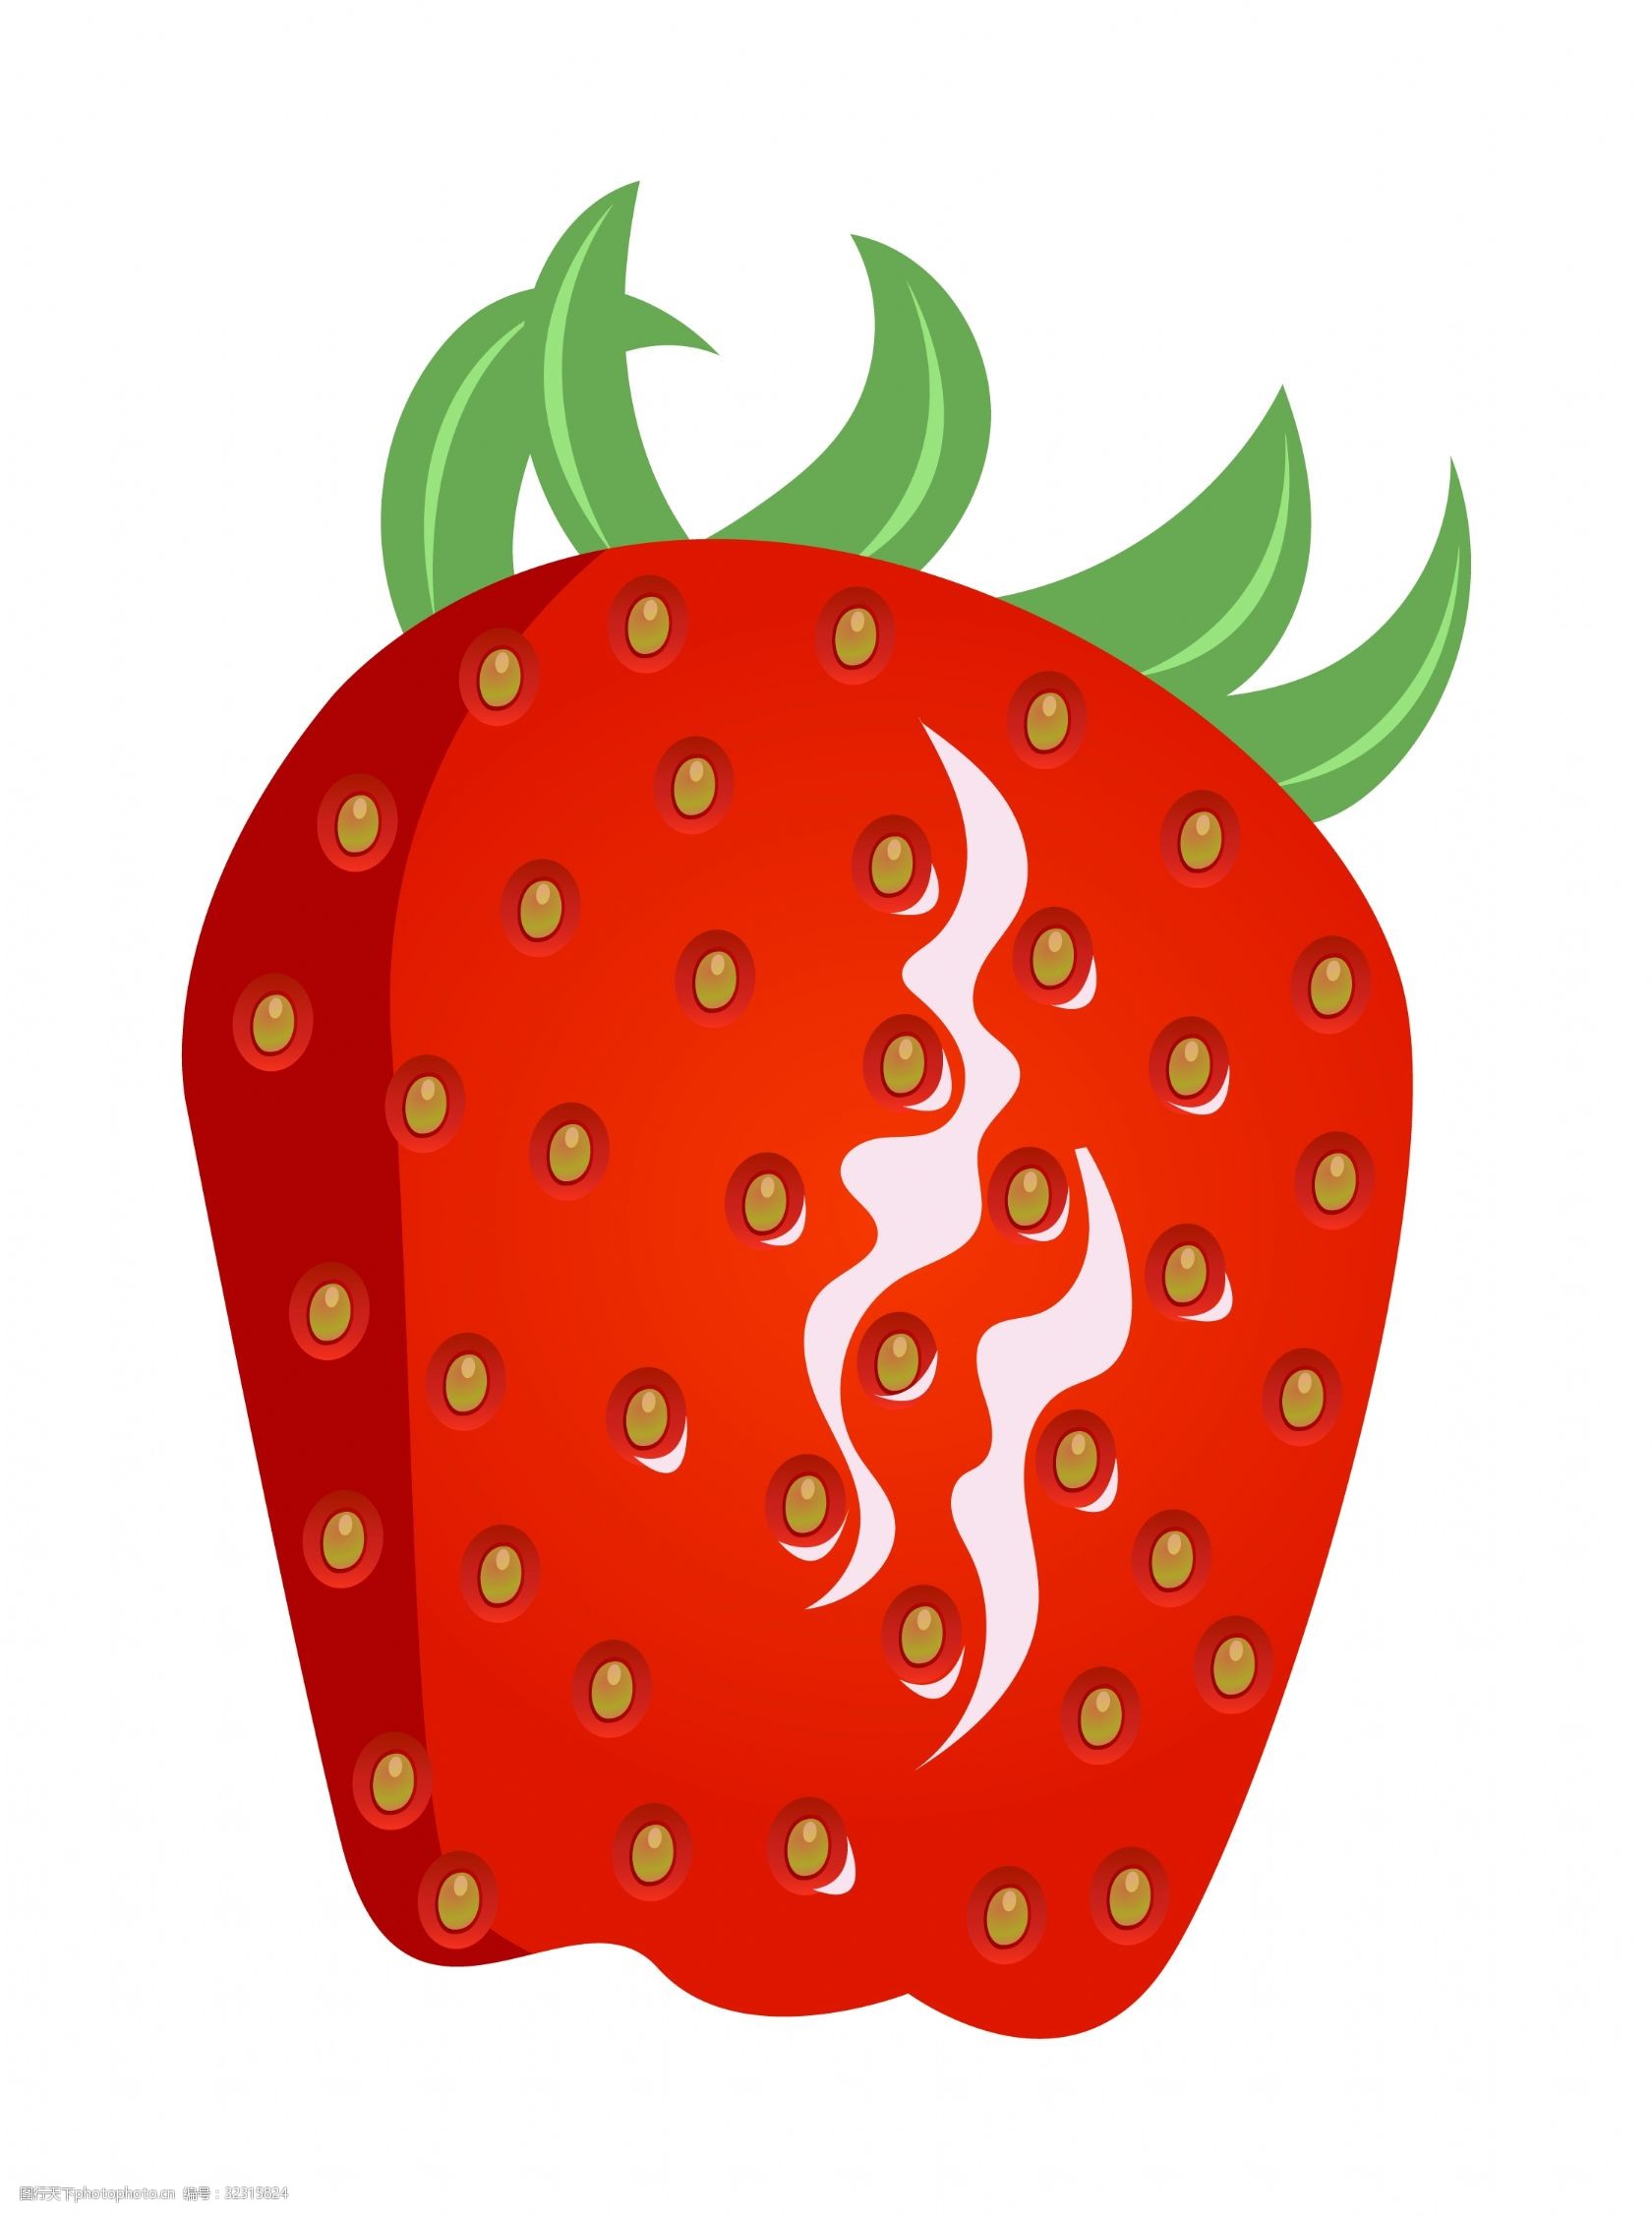 关键词:漂亮的草莓手绘插画 漂亮的草莓 手绘草莓 卡通草莓 草莓装饰